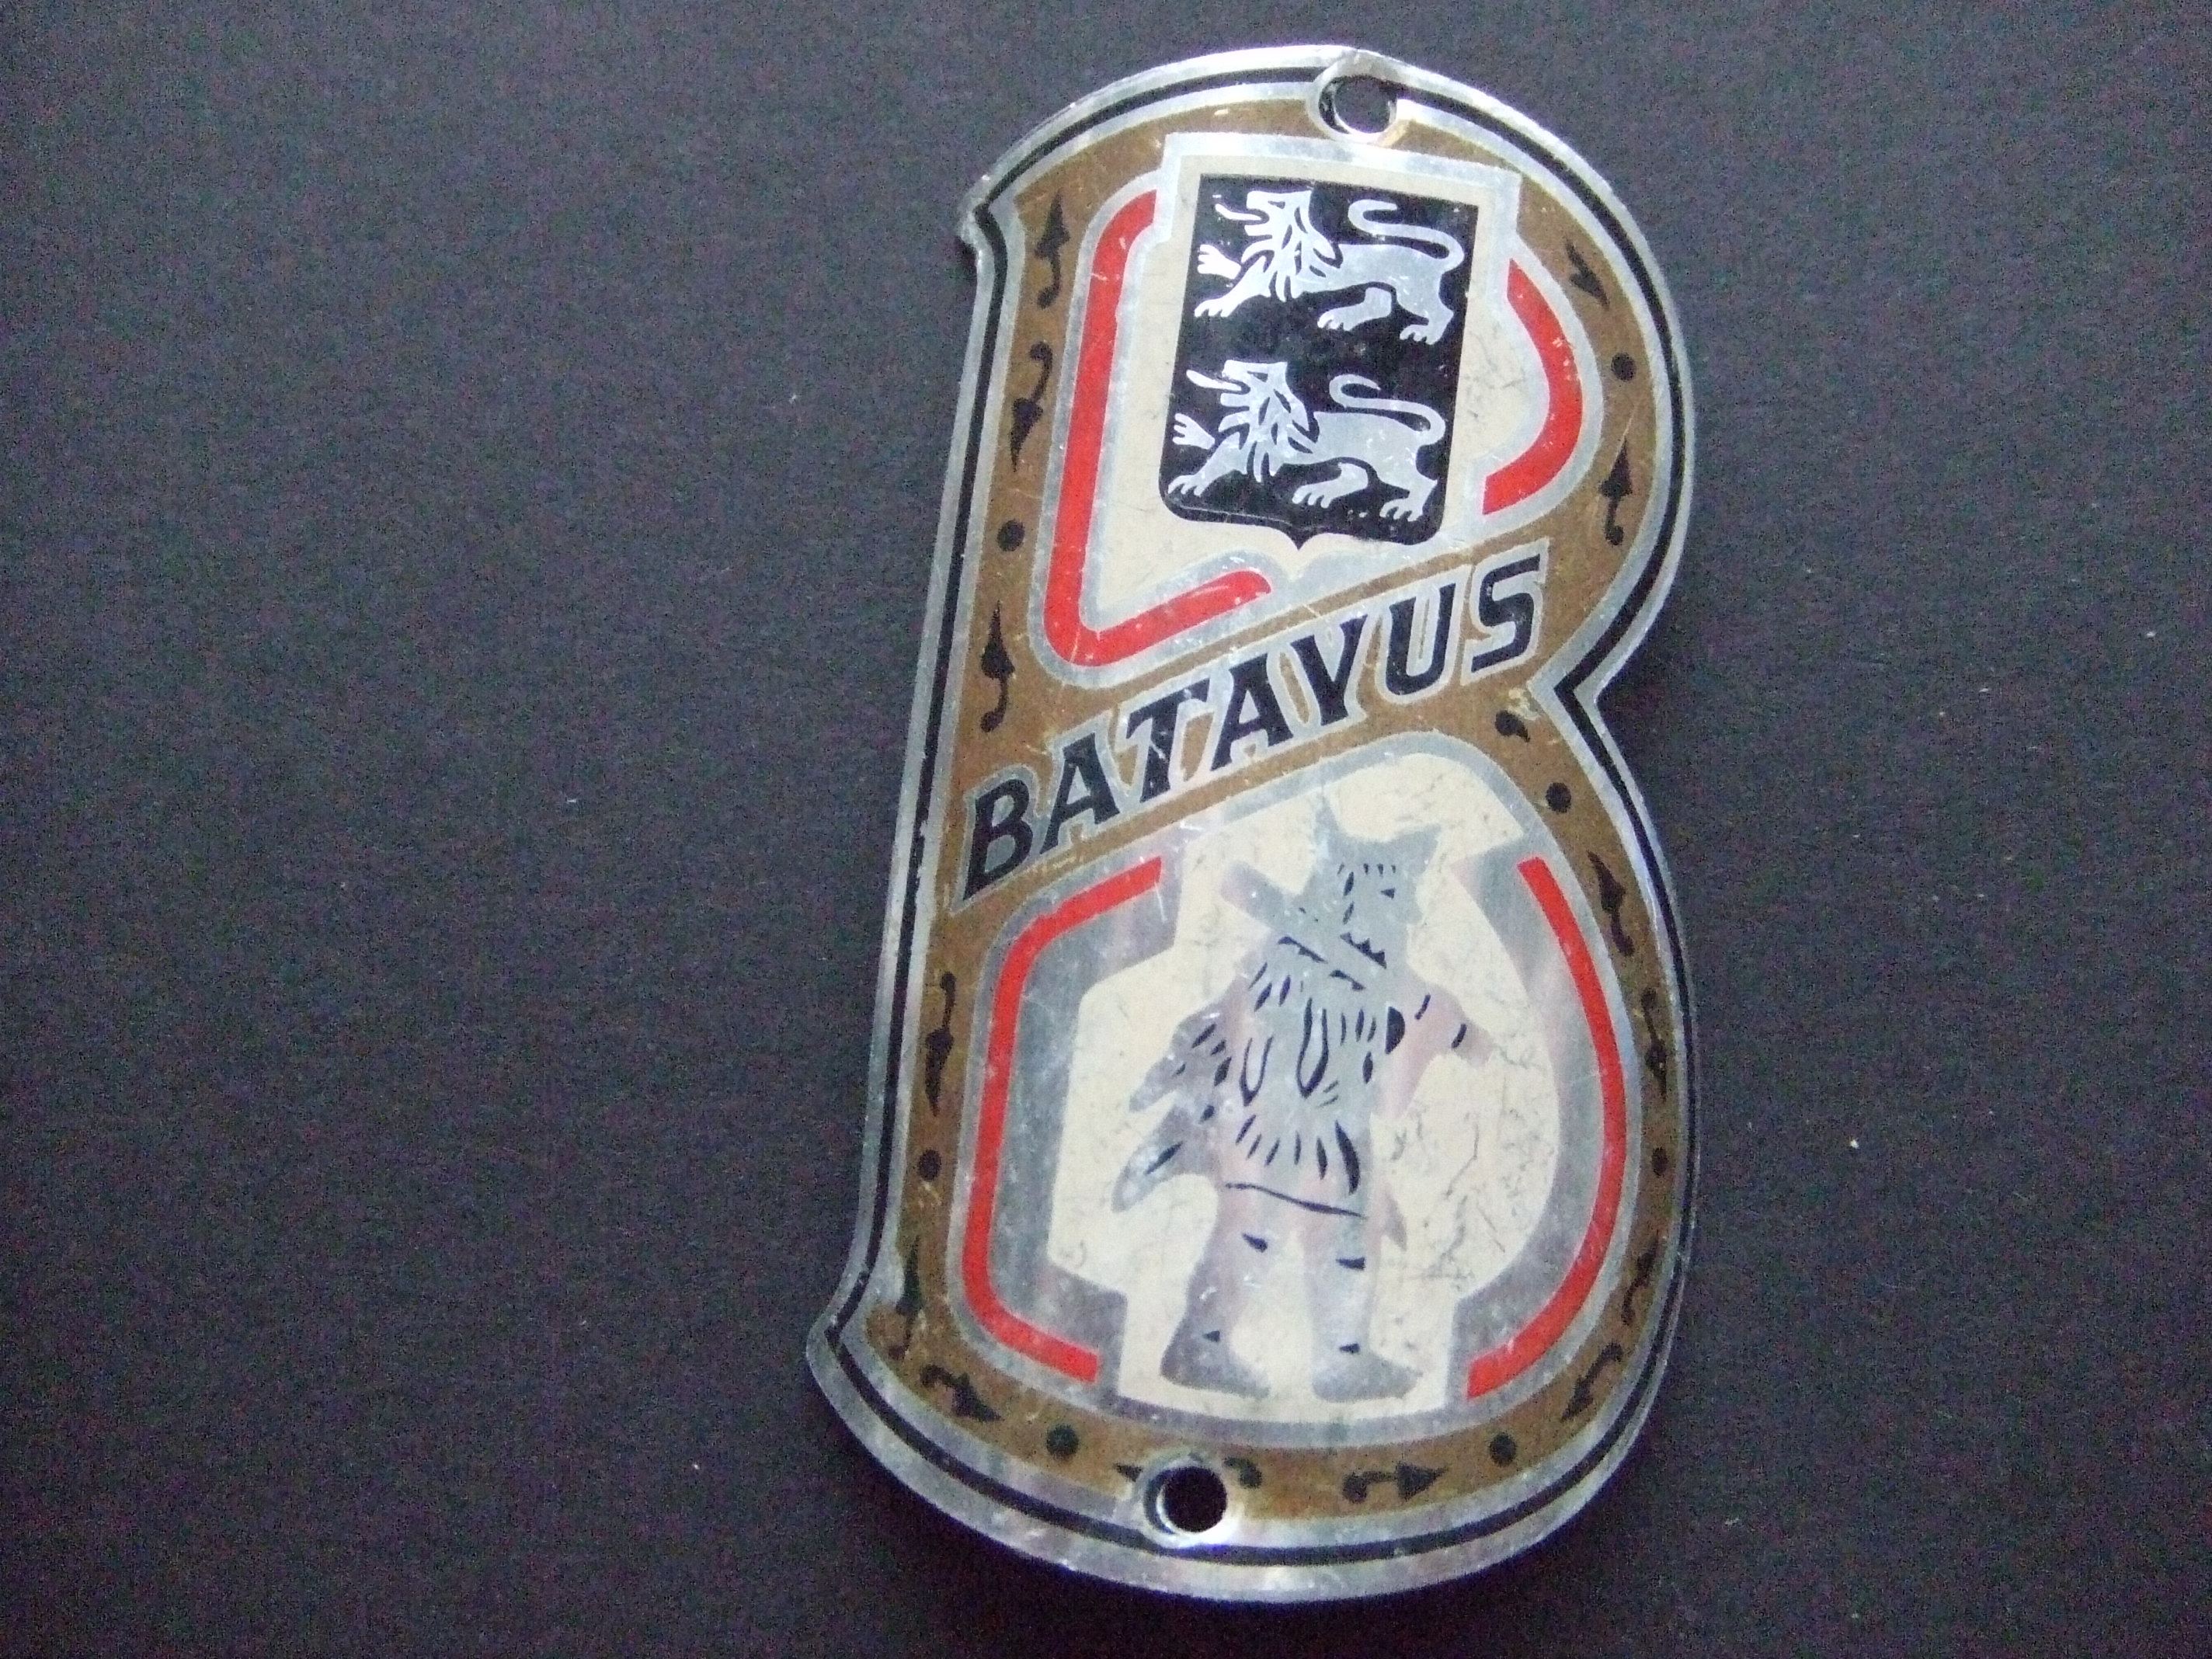 Batavus fietsfabriek Heerenveen balhoofdplaatje 1